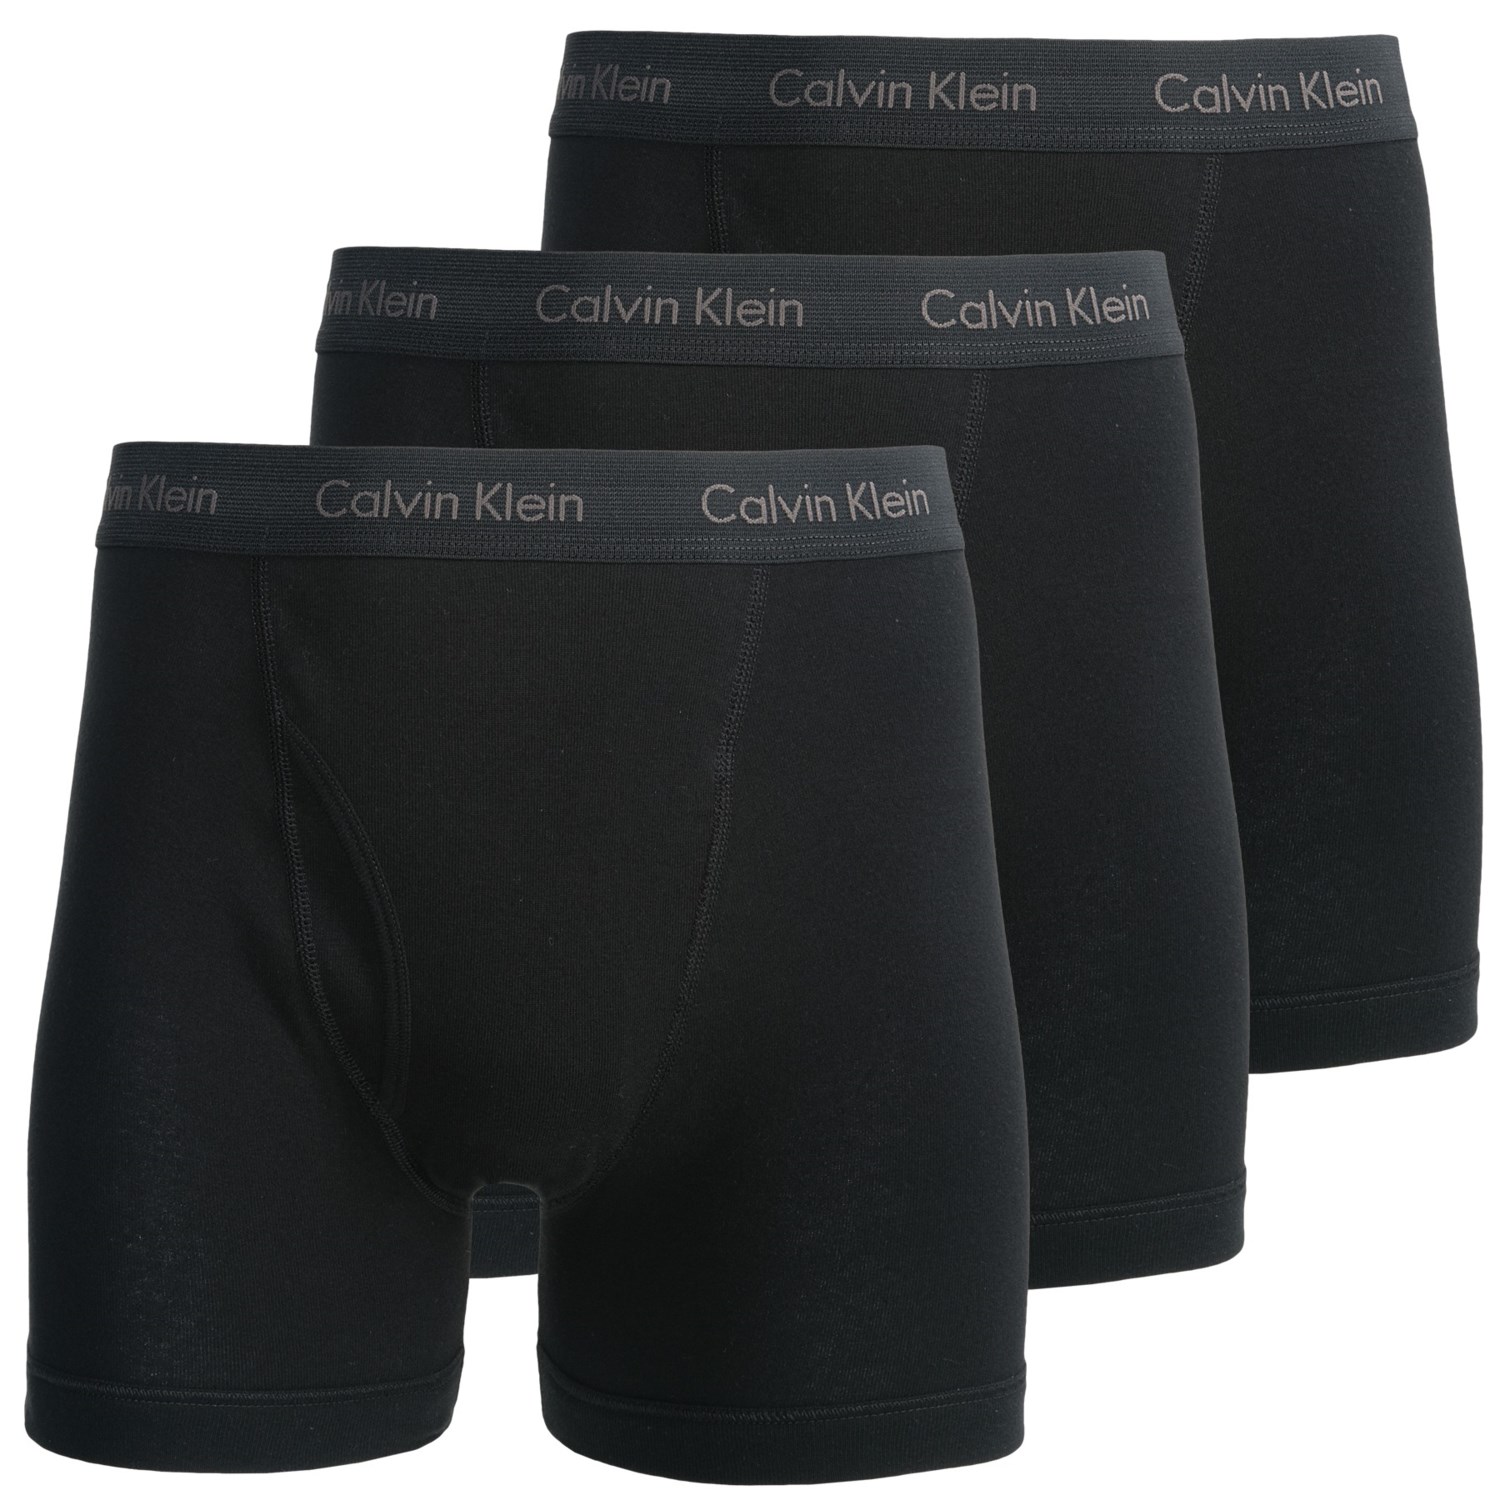 Calvin Klein Classics Boxer Briefs (For Men) 8586A - Save 24%